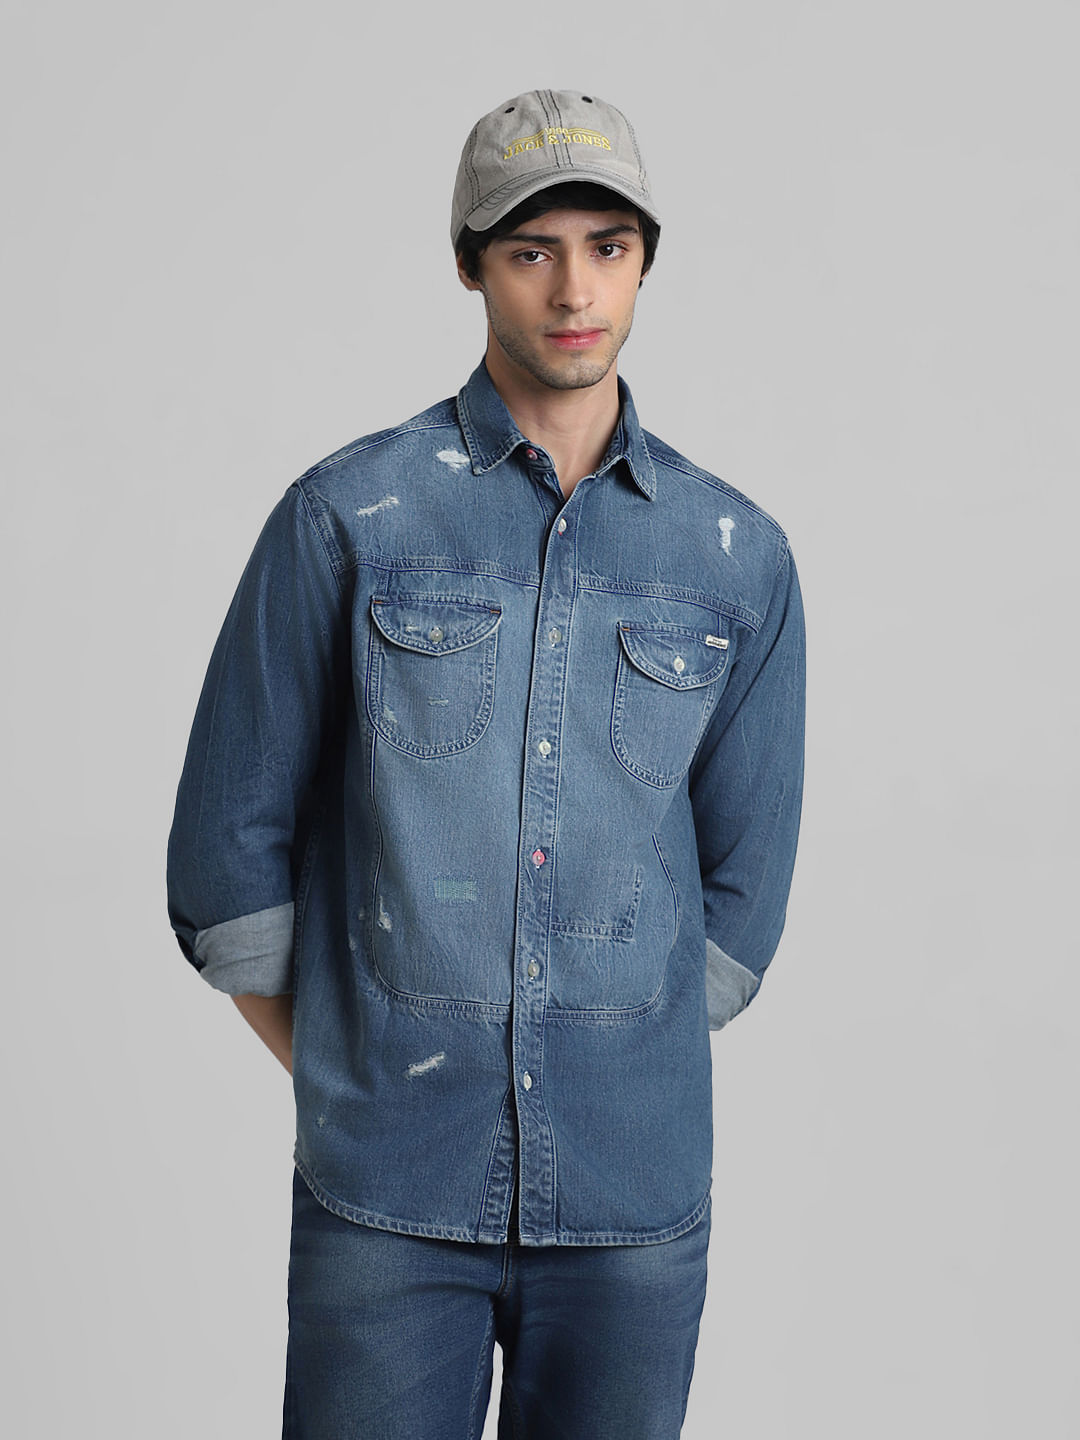 The Denim Shirt: Your Summer Suit Fall Transition Piece – Men's Style Pro |  Men's Style Blog & Shop